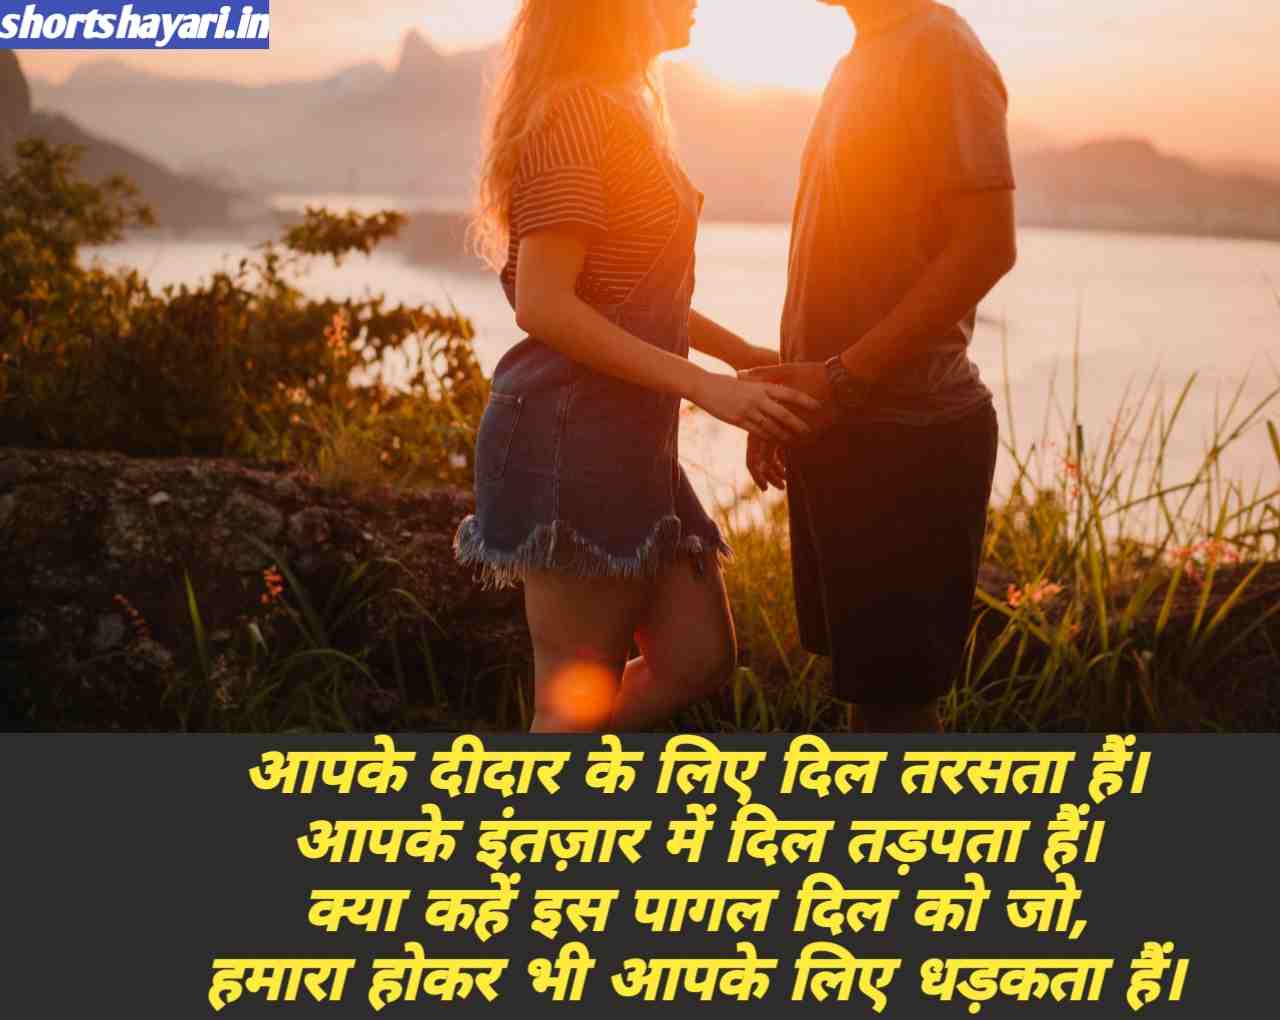 Best रोमांटिक शायरी हिंदी में लिखी हुई ...